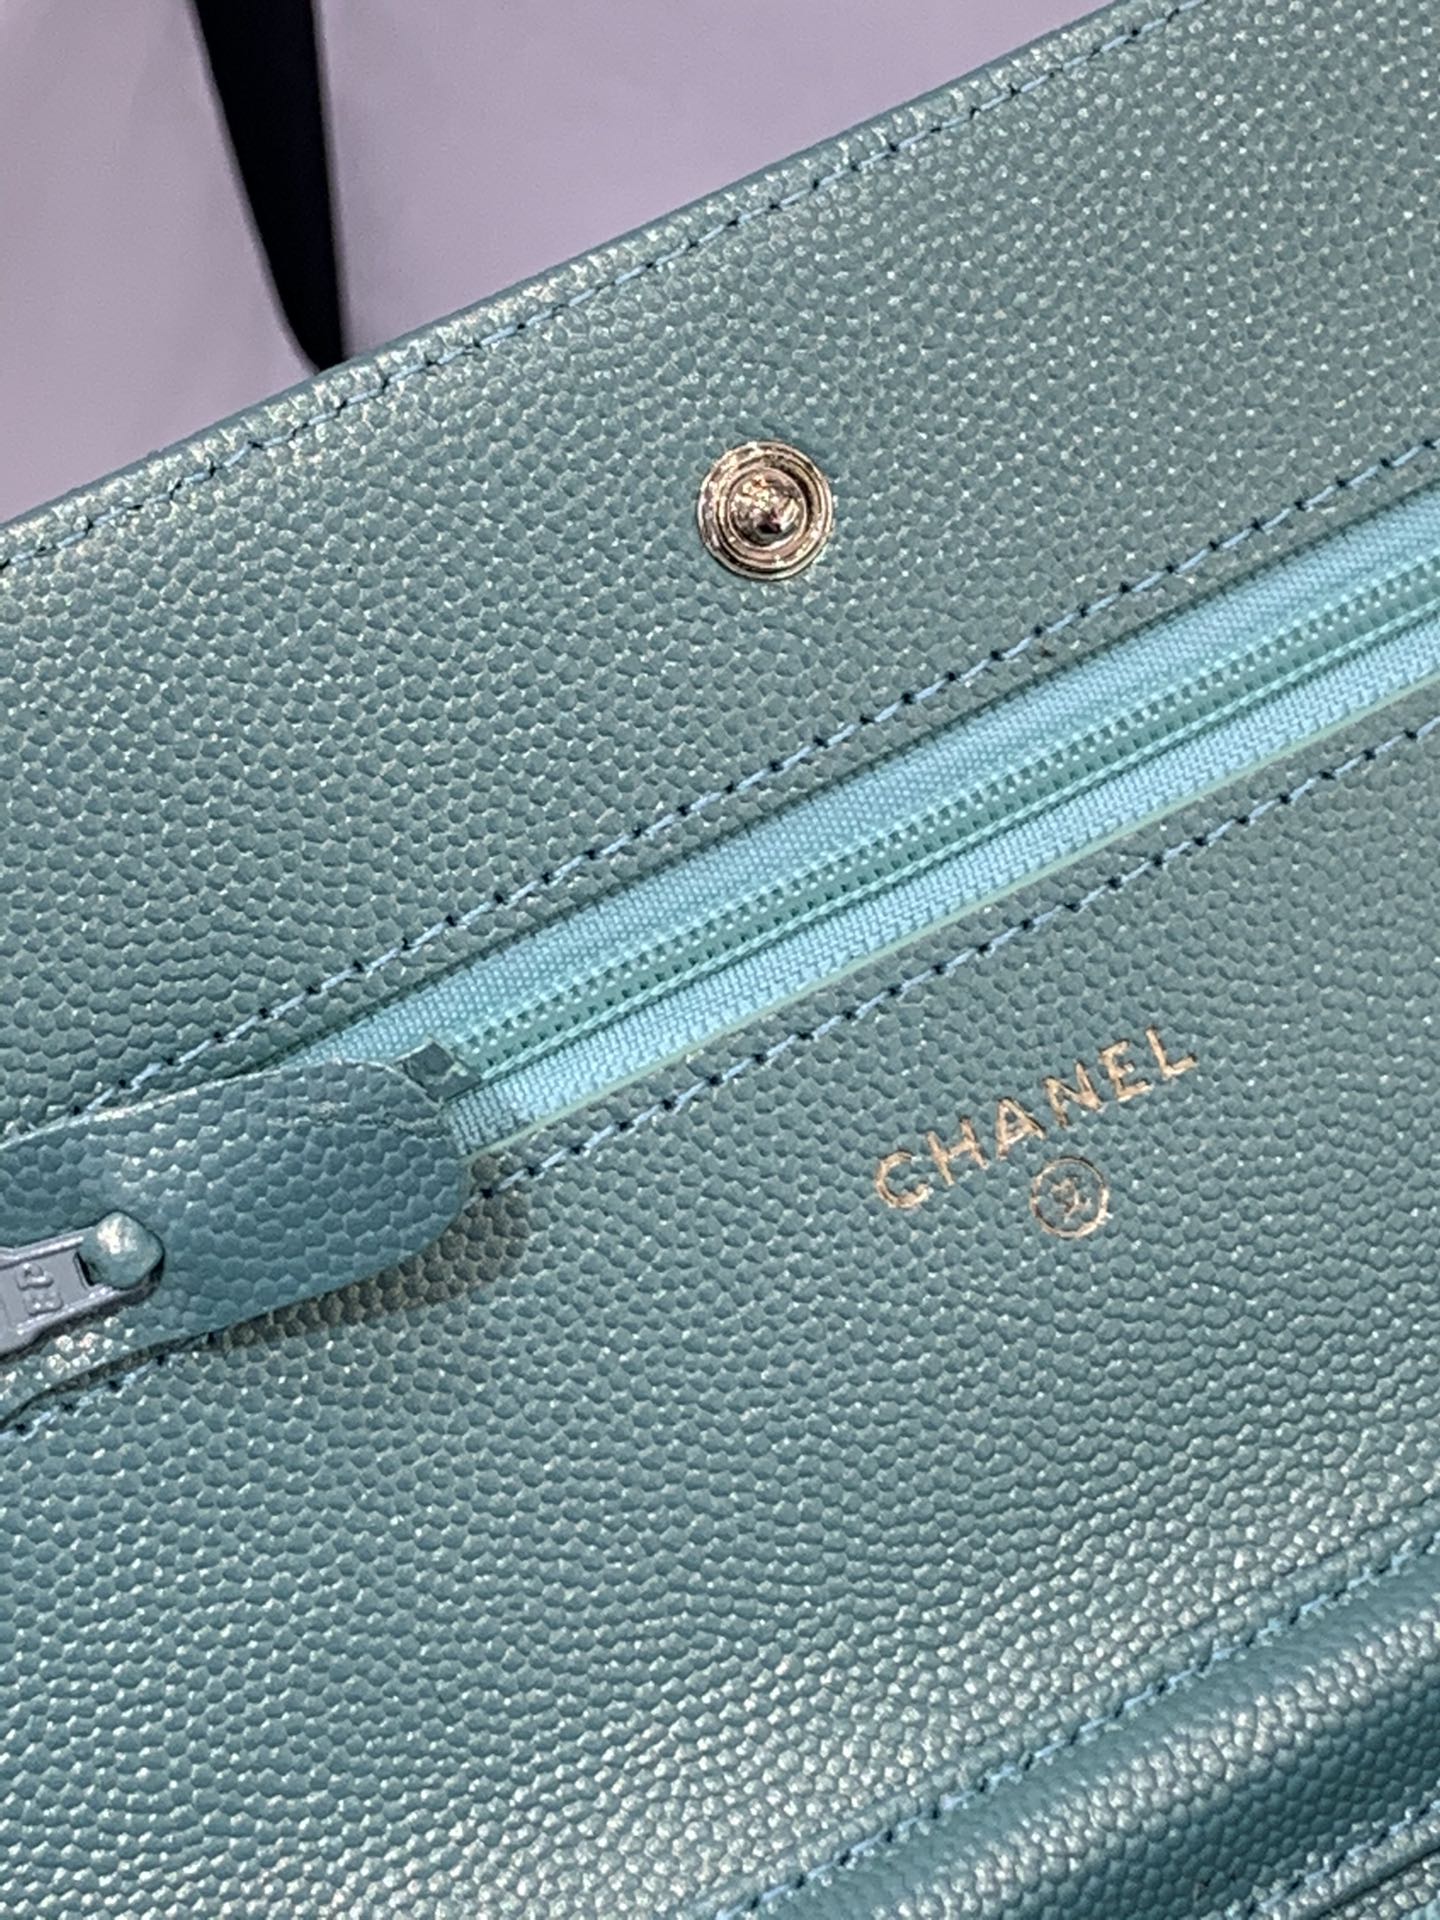 【按扣版】 Chanel Woc 新款变色woc 珠光皮 顶级皮料五金 高品质 19.5-13-3.5cm